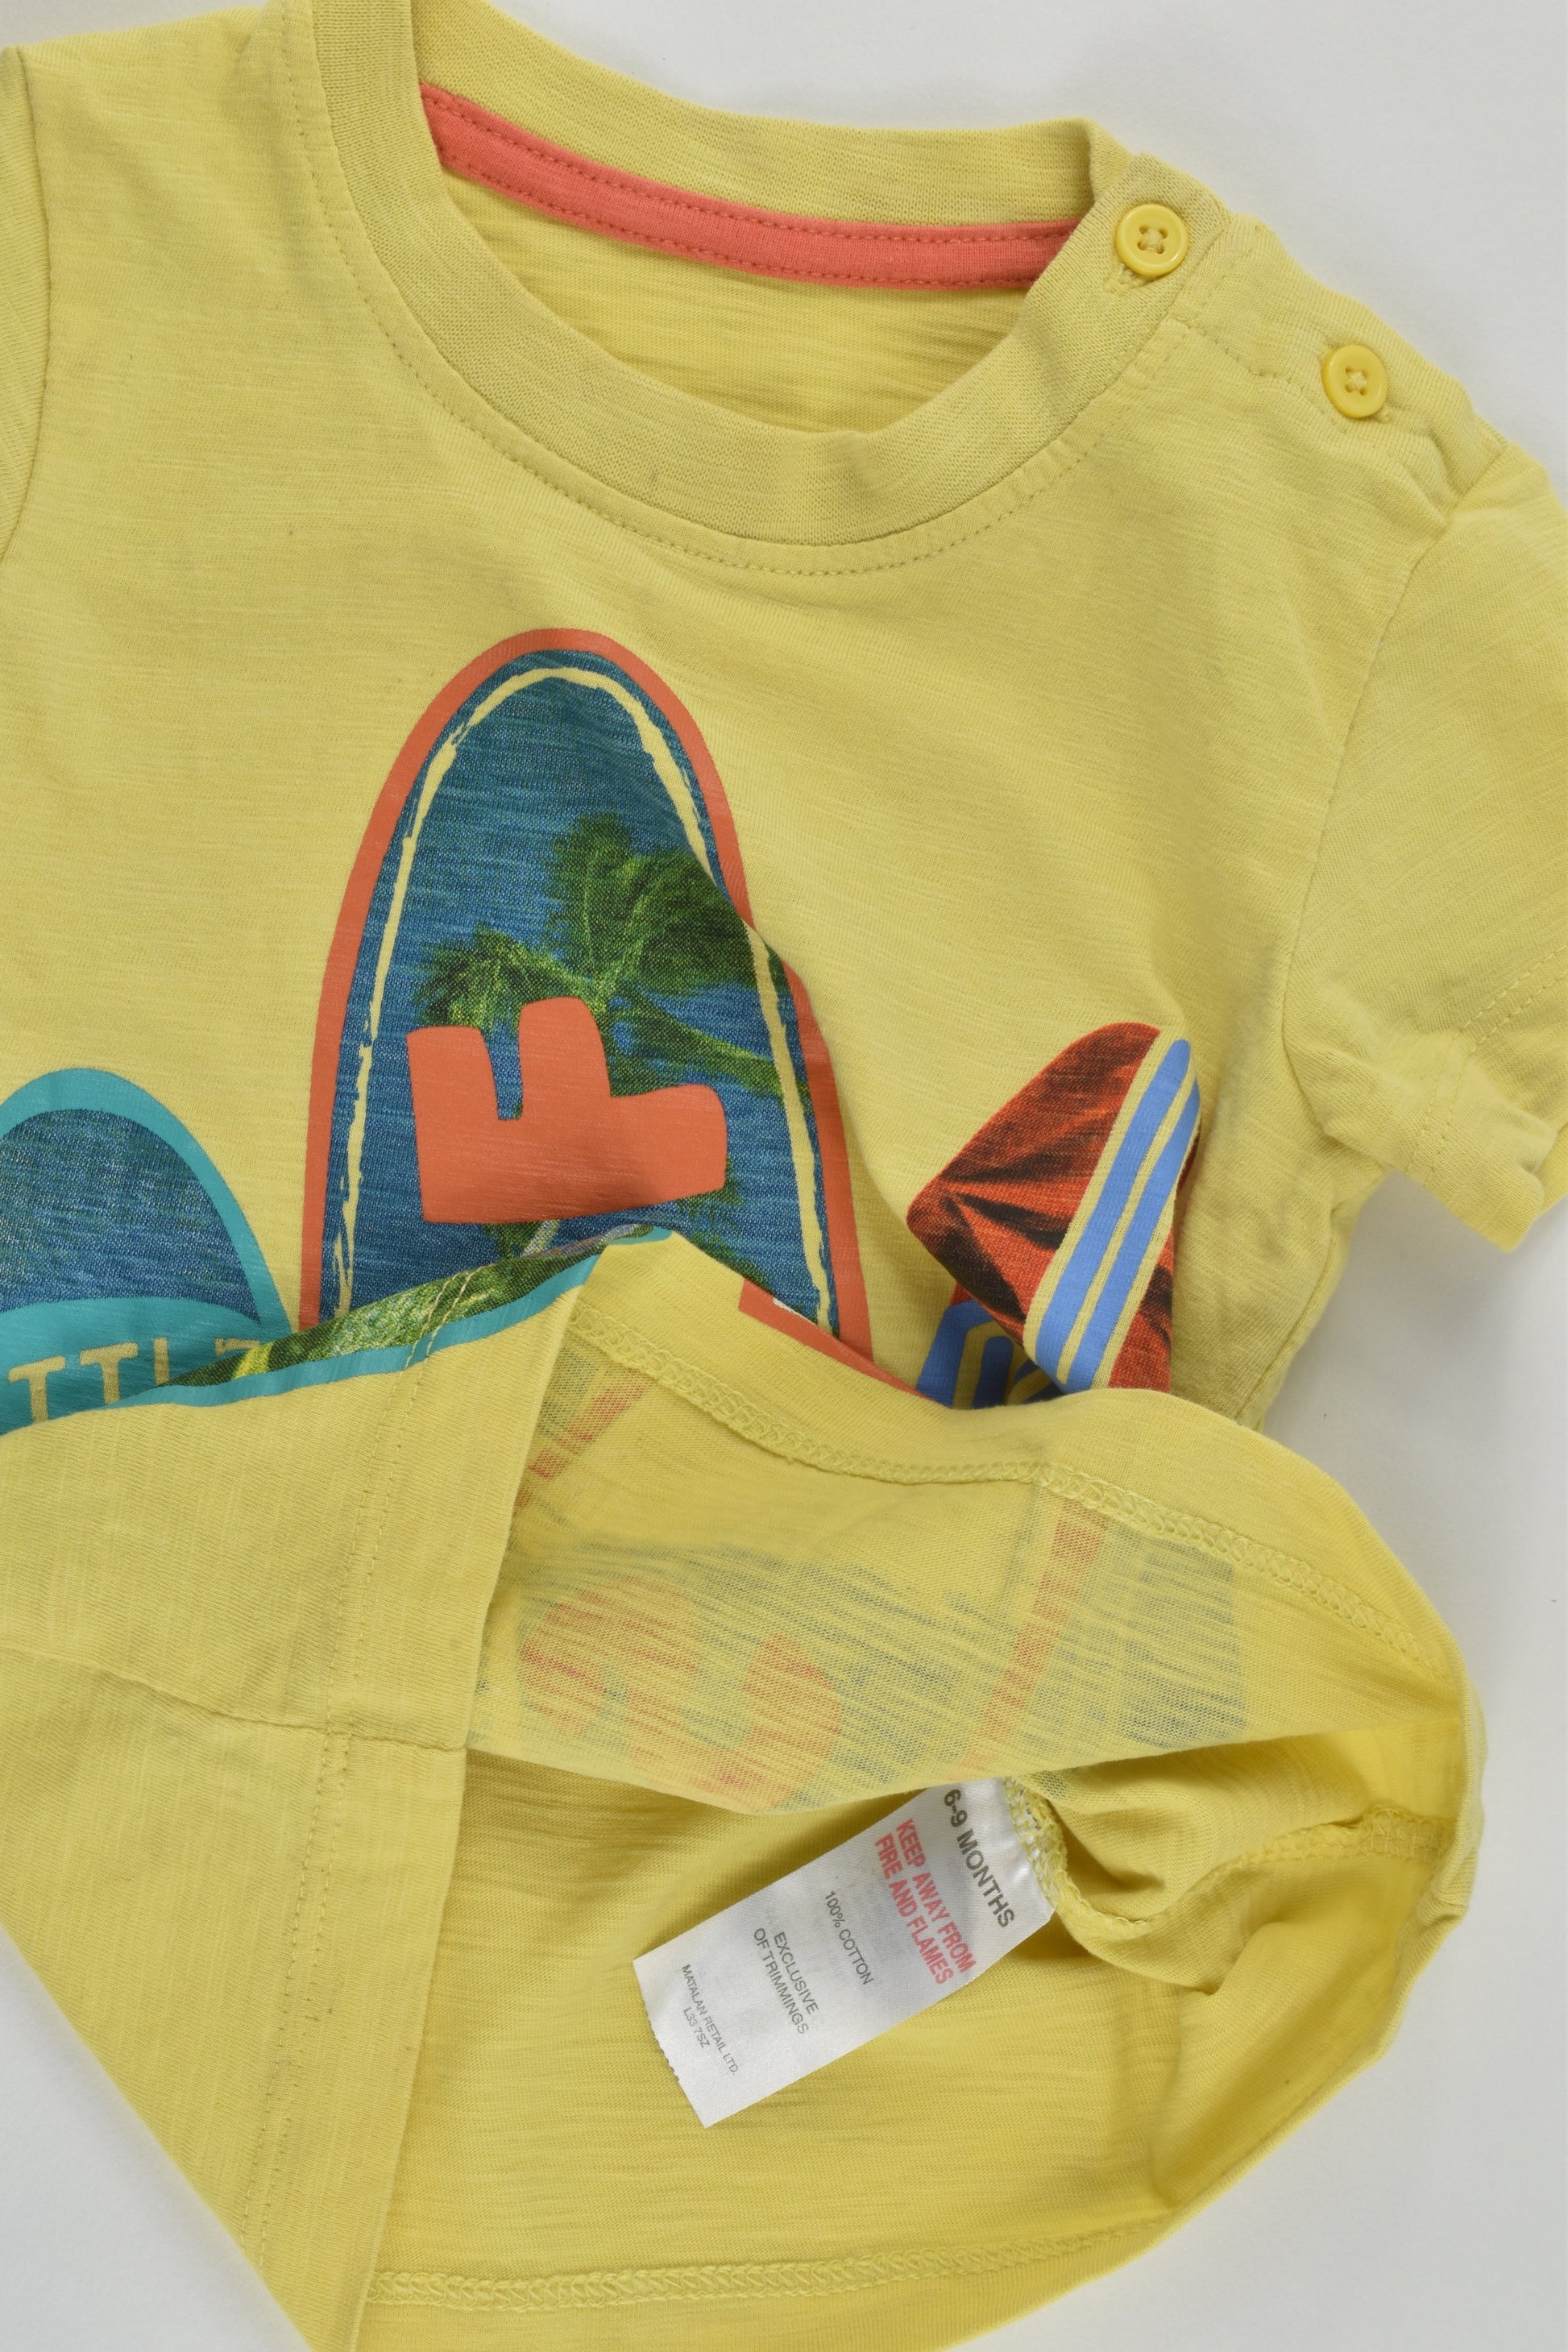 Matalan Size 0 (6-9 months) 'Little Surf Dude' T-shirt